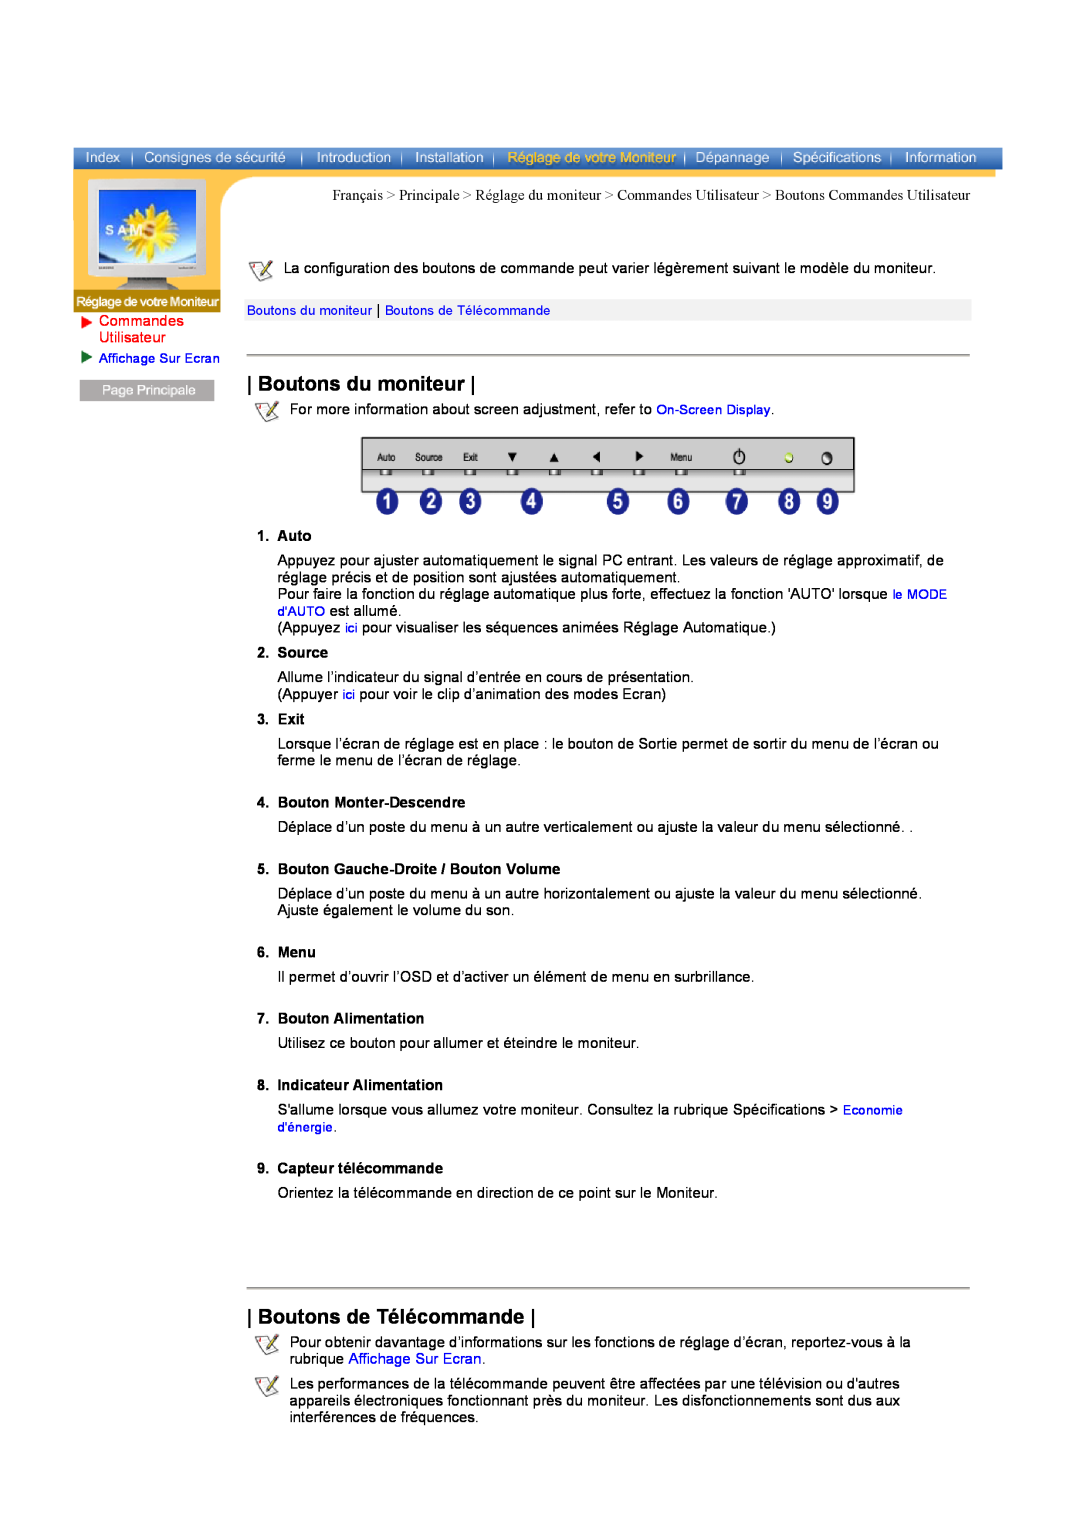 Samsung CK40PSSS/EDC manual Boutons du moniteur, Boutons de Télécommande, Commandes Utilisateur, Auto, Source, Exit, Menu 